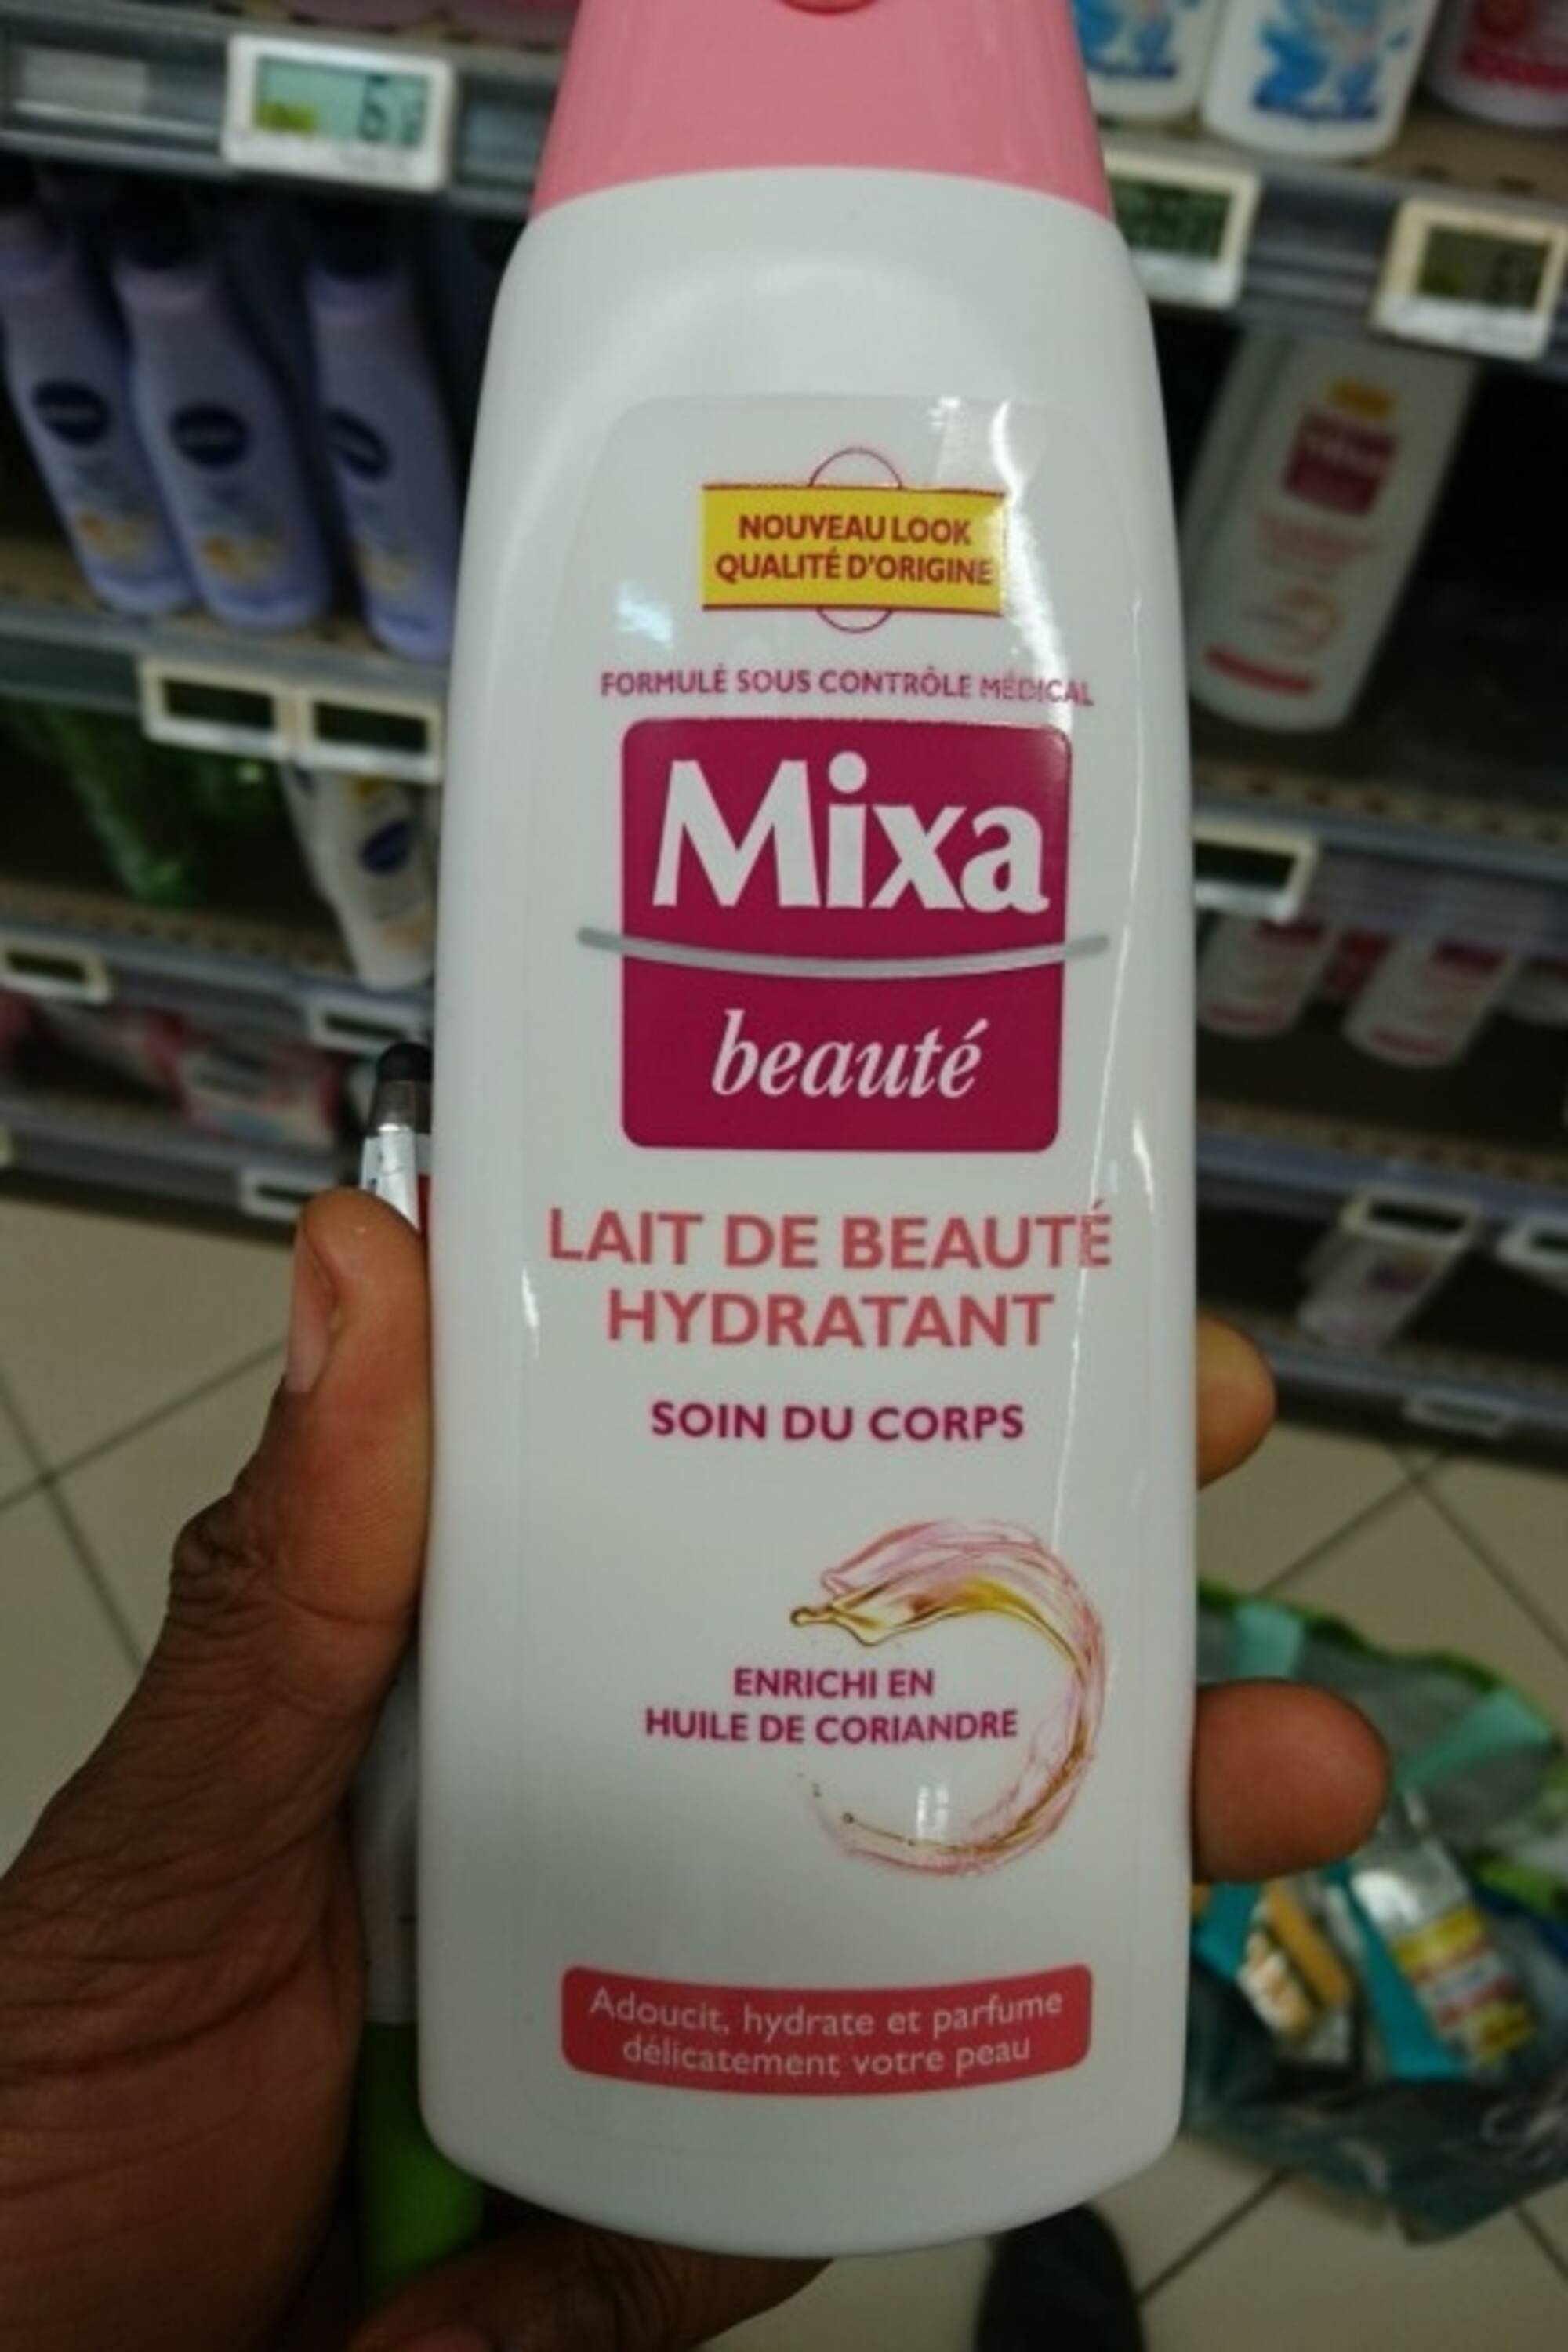 Mixa - La gamme Lait de Beauté hydratant Mixa rend à votre peau toute sa  beauté, sa douceur et son éclat. Retrouvez nos produits dans les  supermarchés et les pharmacies les plus